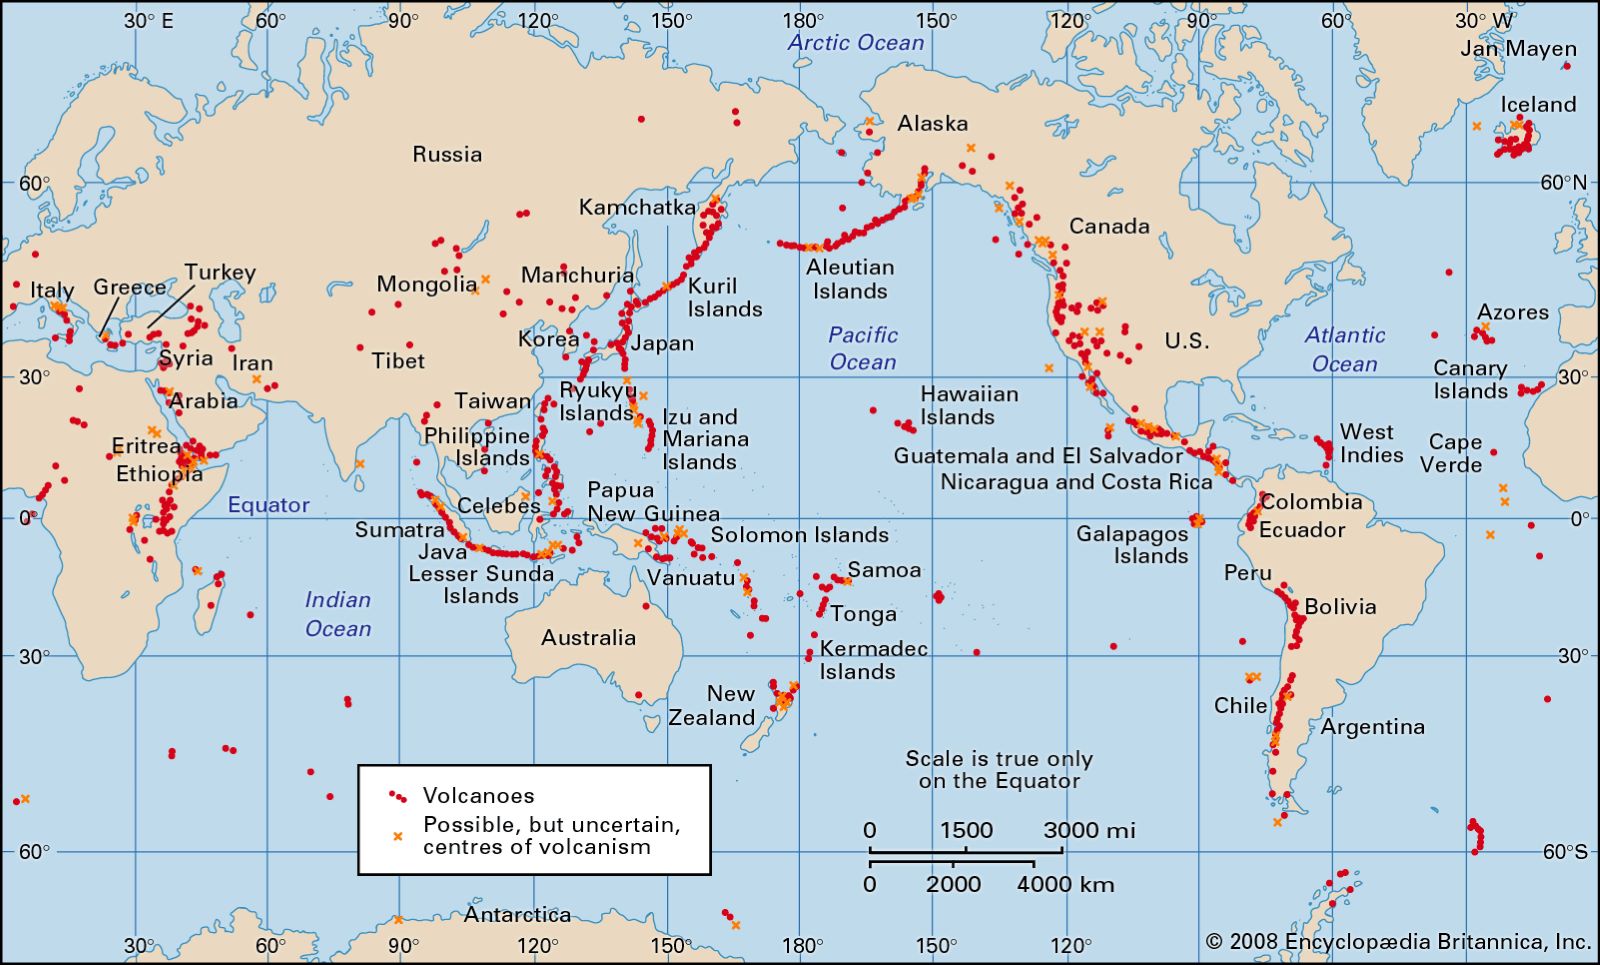 Volcanes activos en los últimos 10.000 años